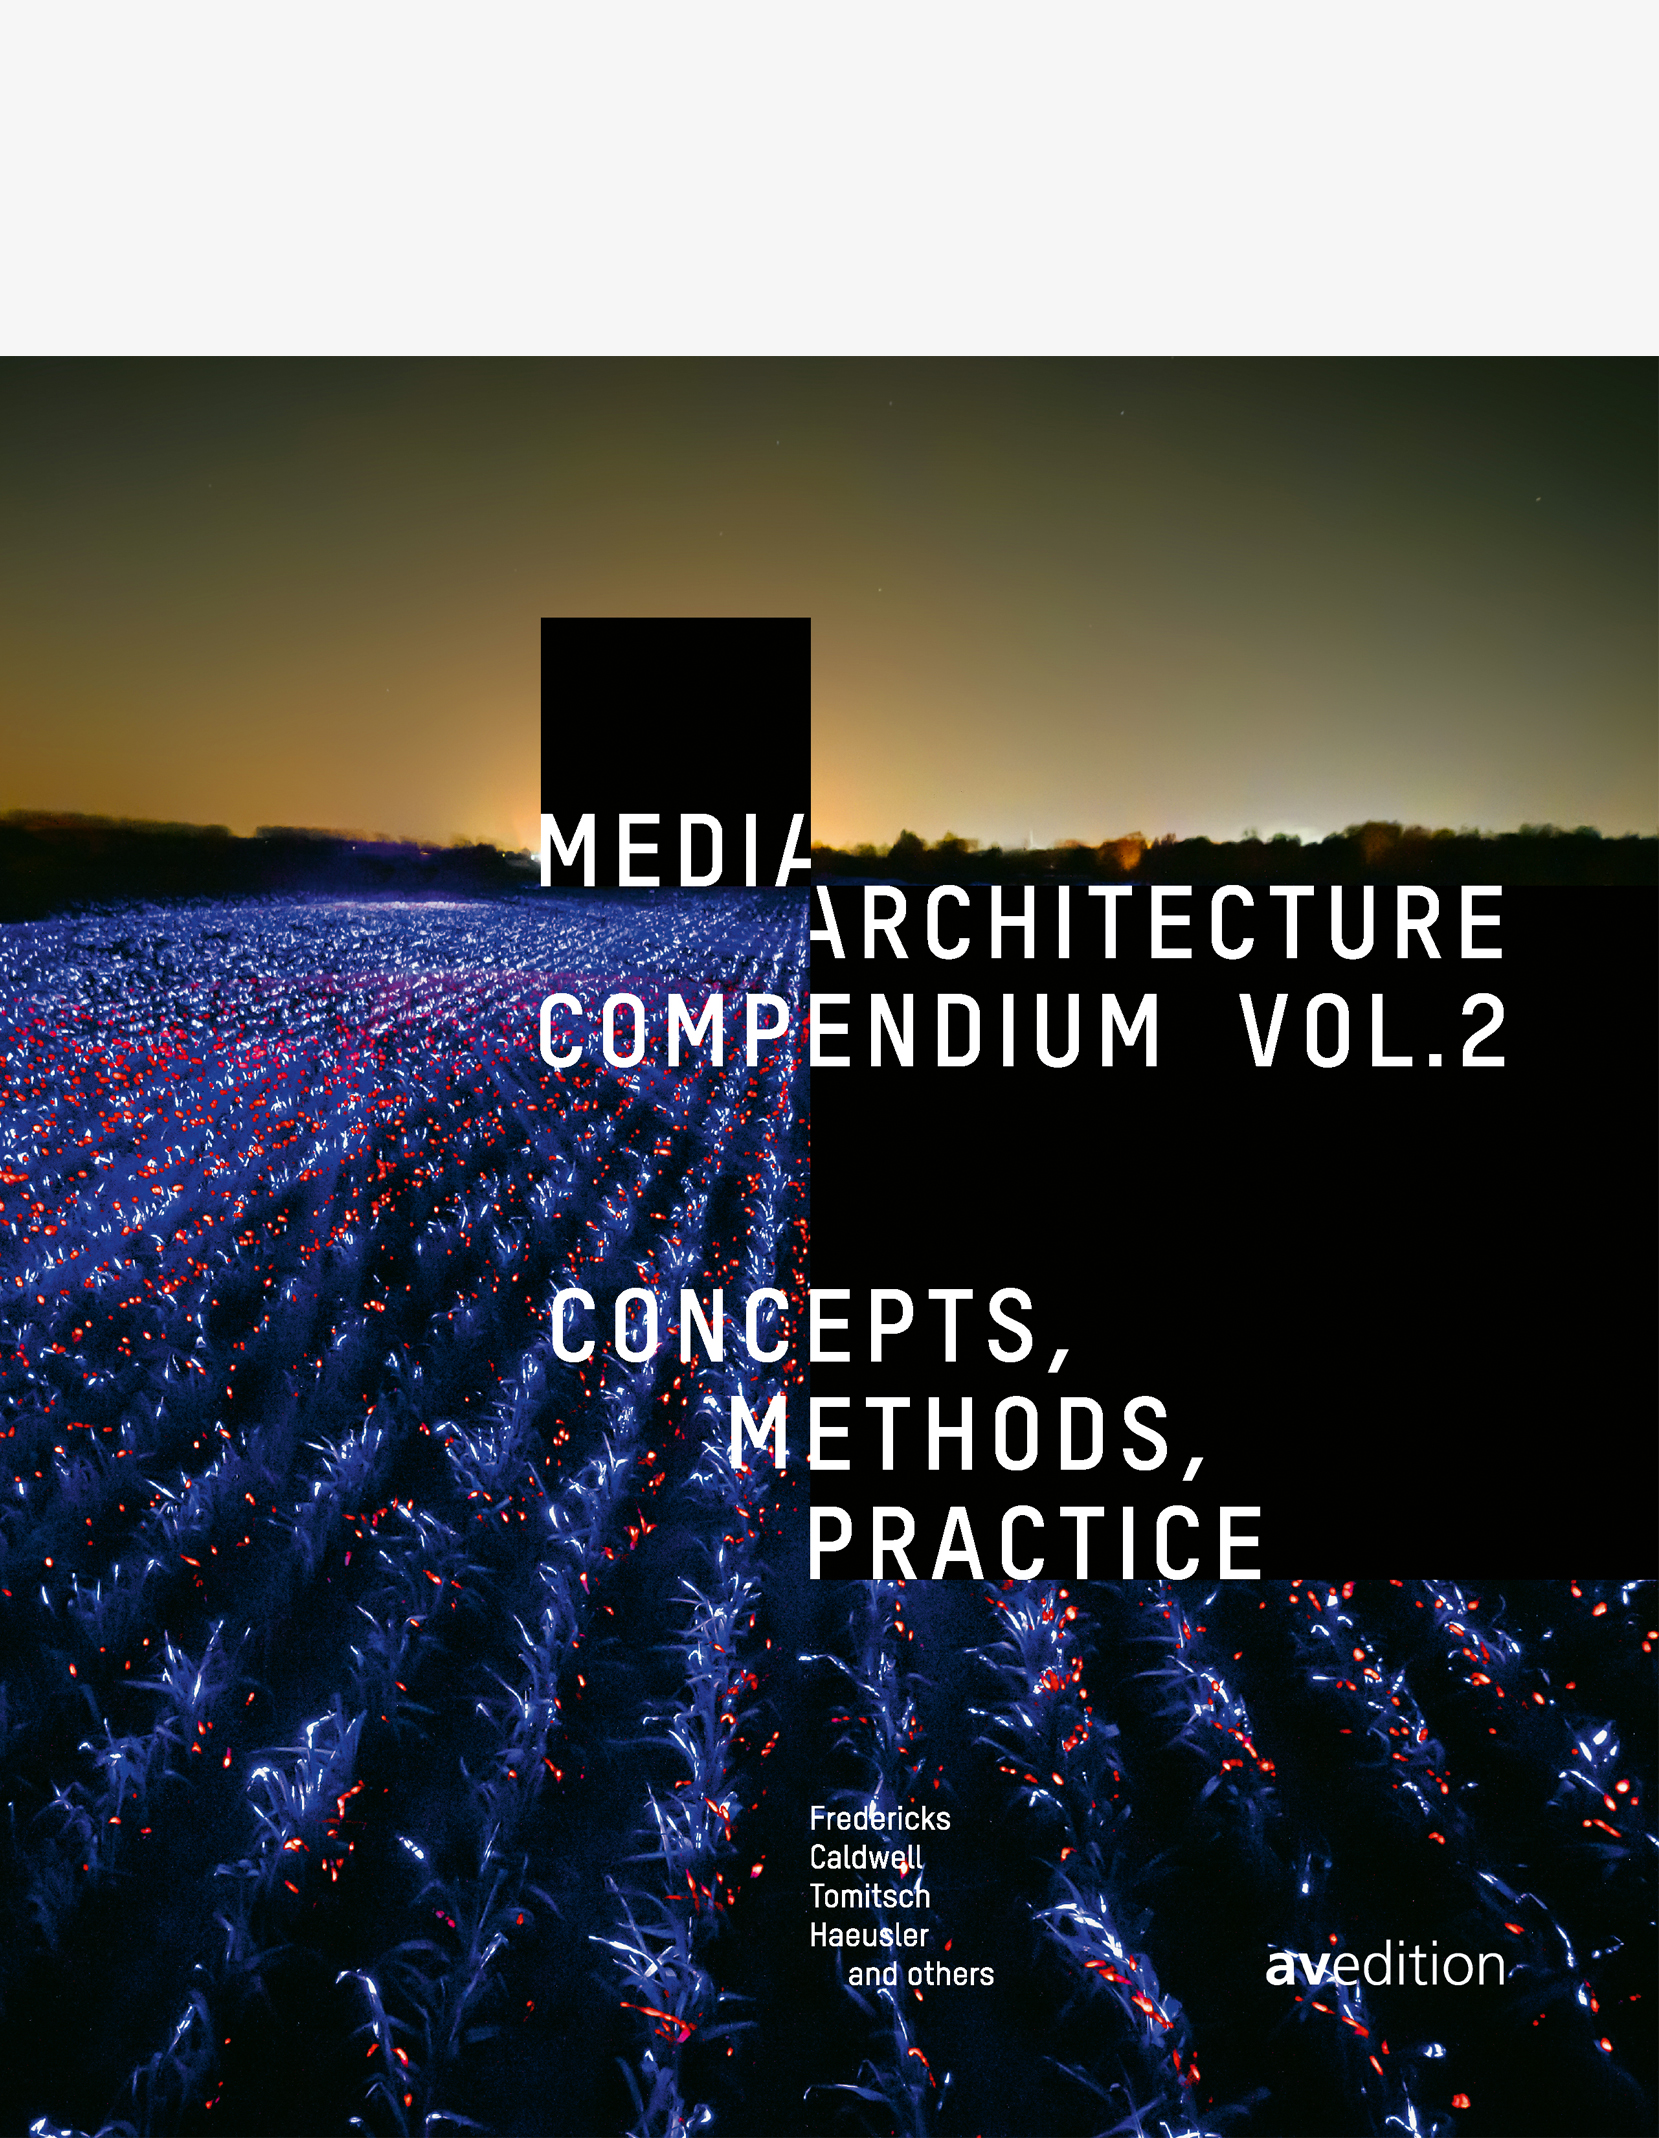 Media Architecture Compendium Vol. 2 – Concepts, Methods, Practice